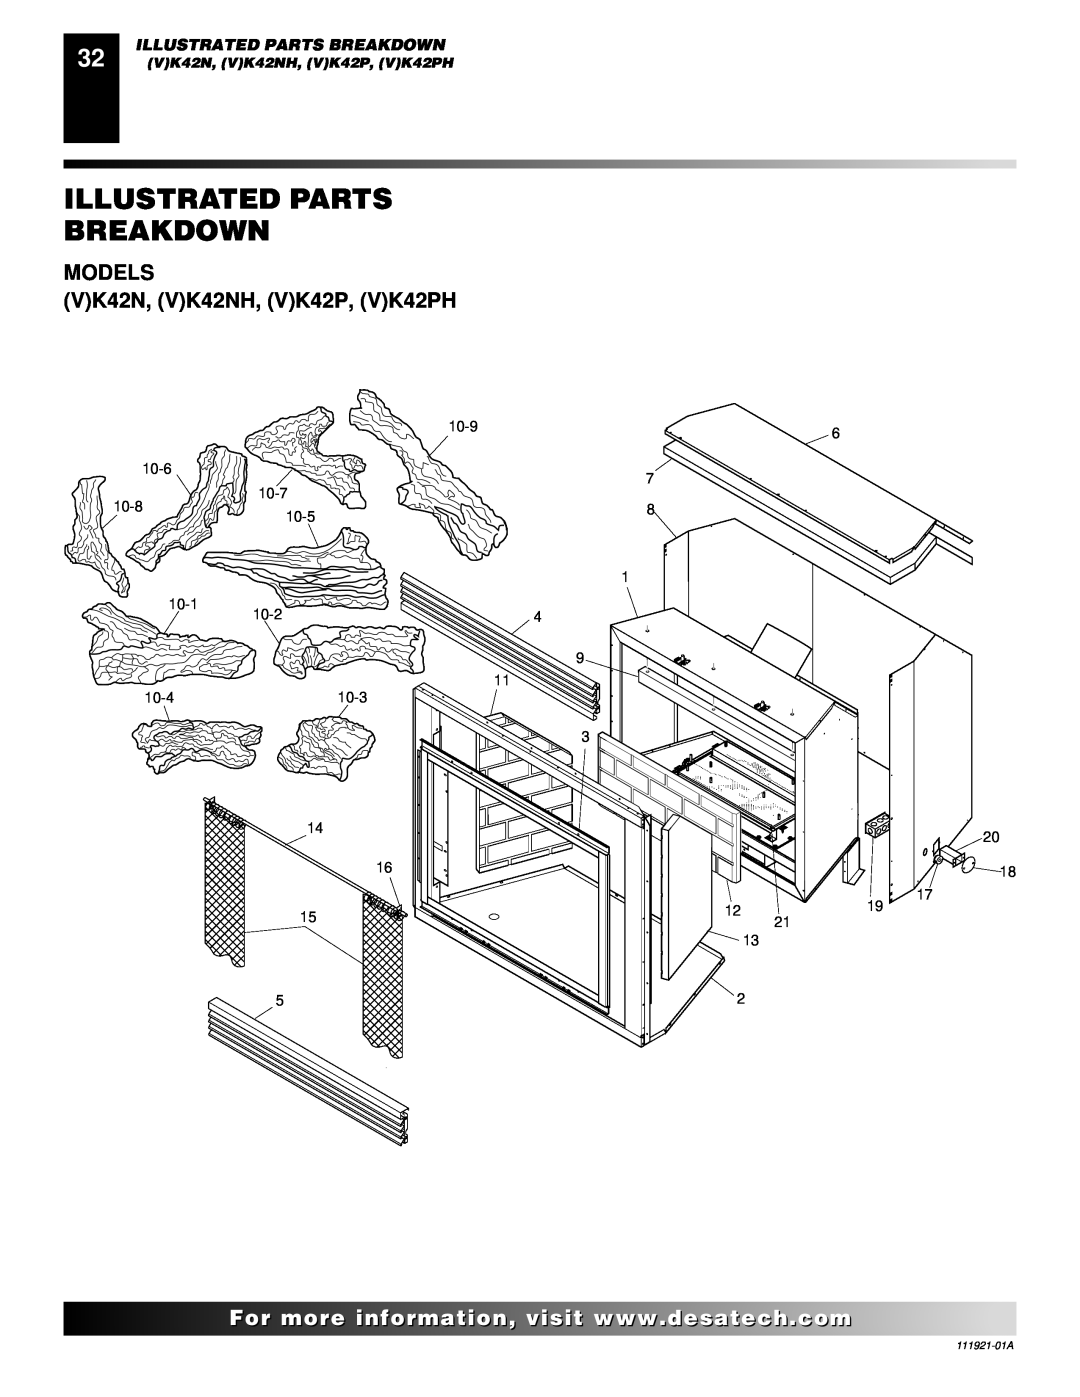 Desa (V)K42N installation manual Illustrated Parts Breakdown, MODELS VK42N, VK42NH, VK42P, VK42PH 